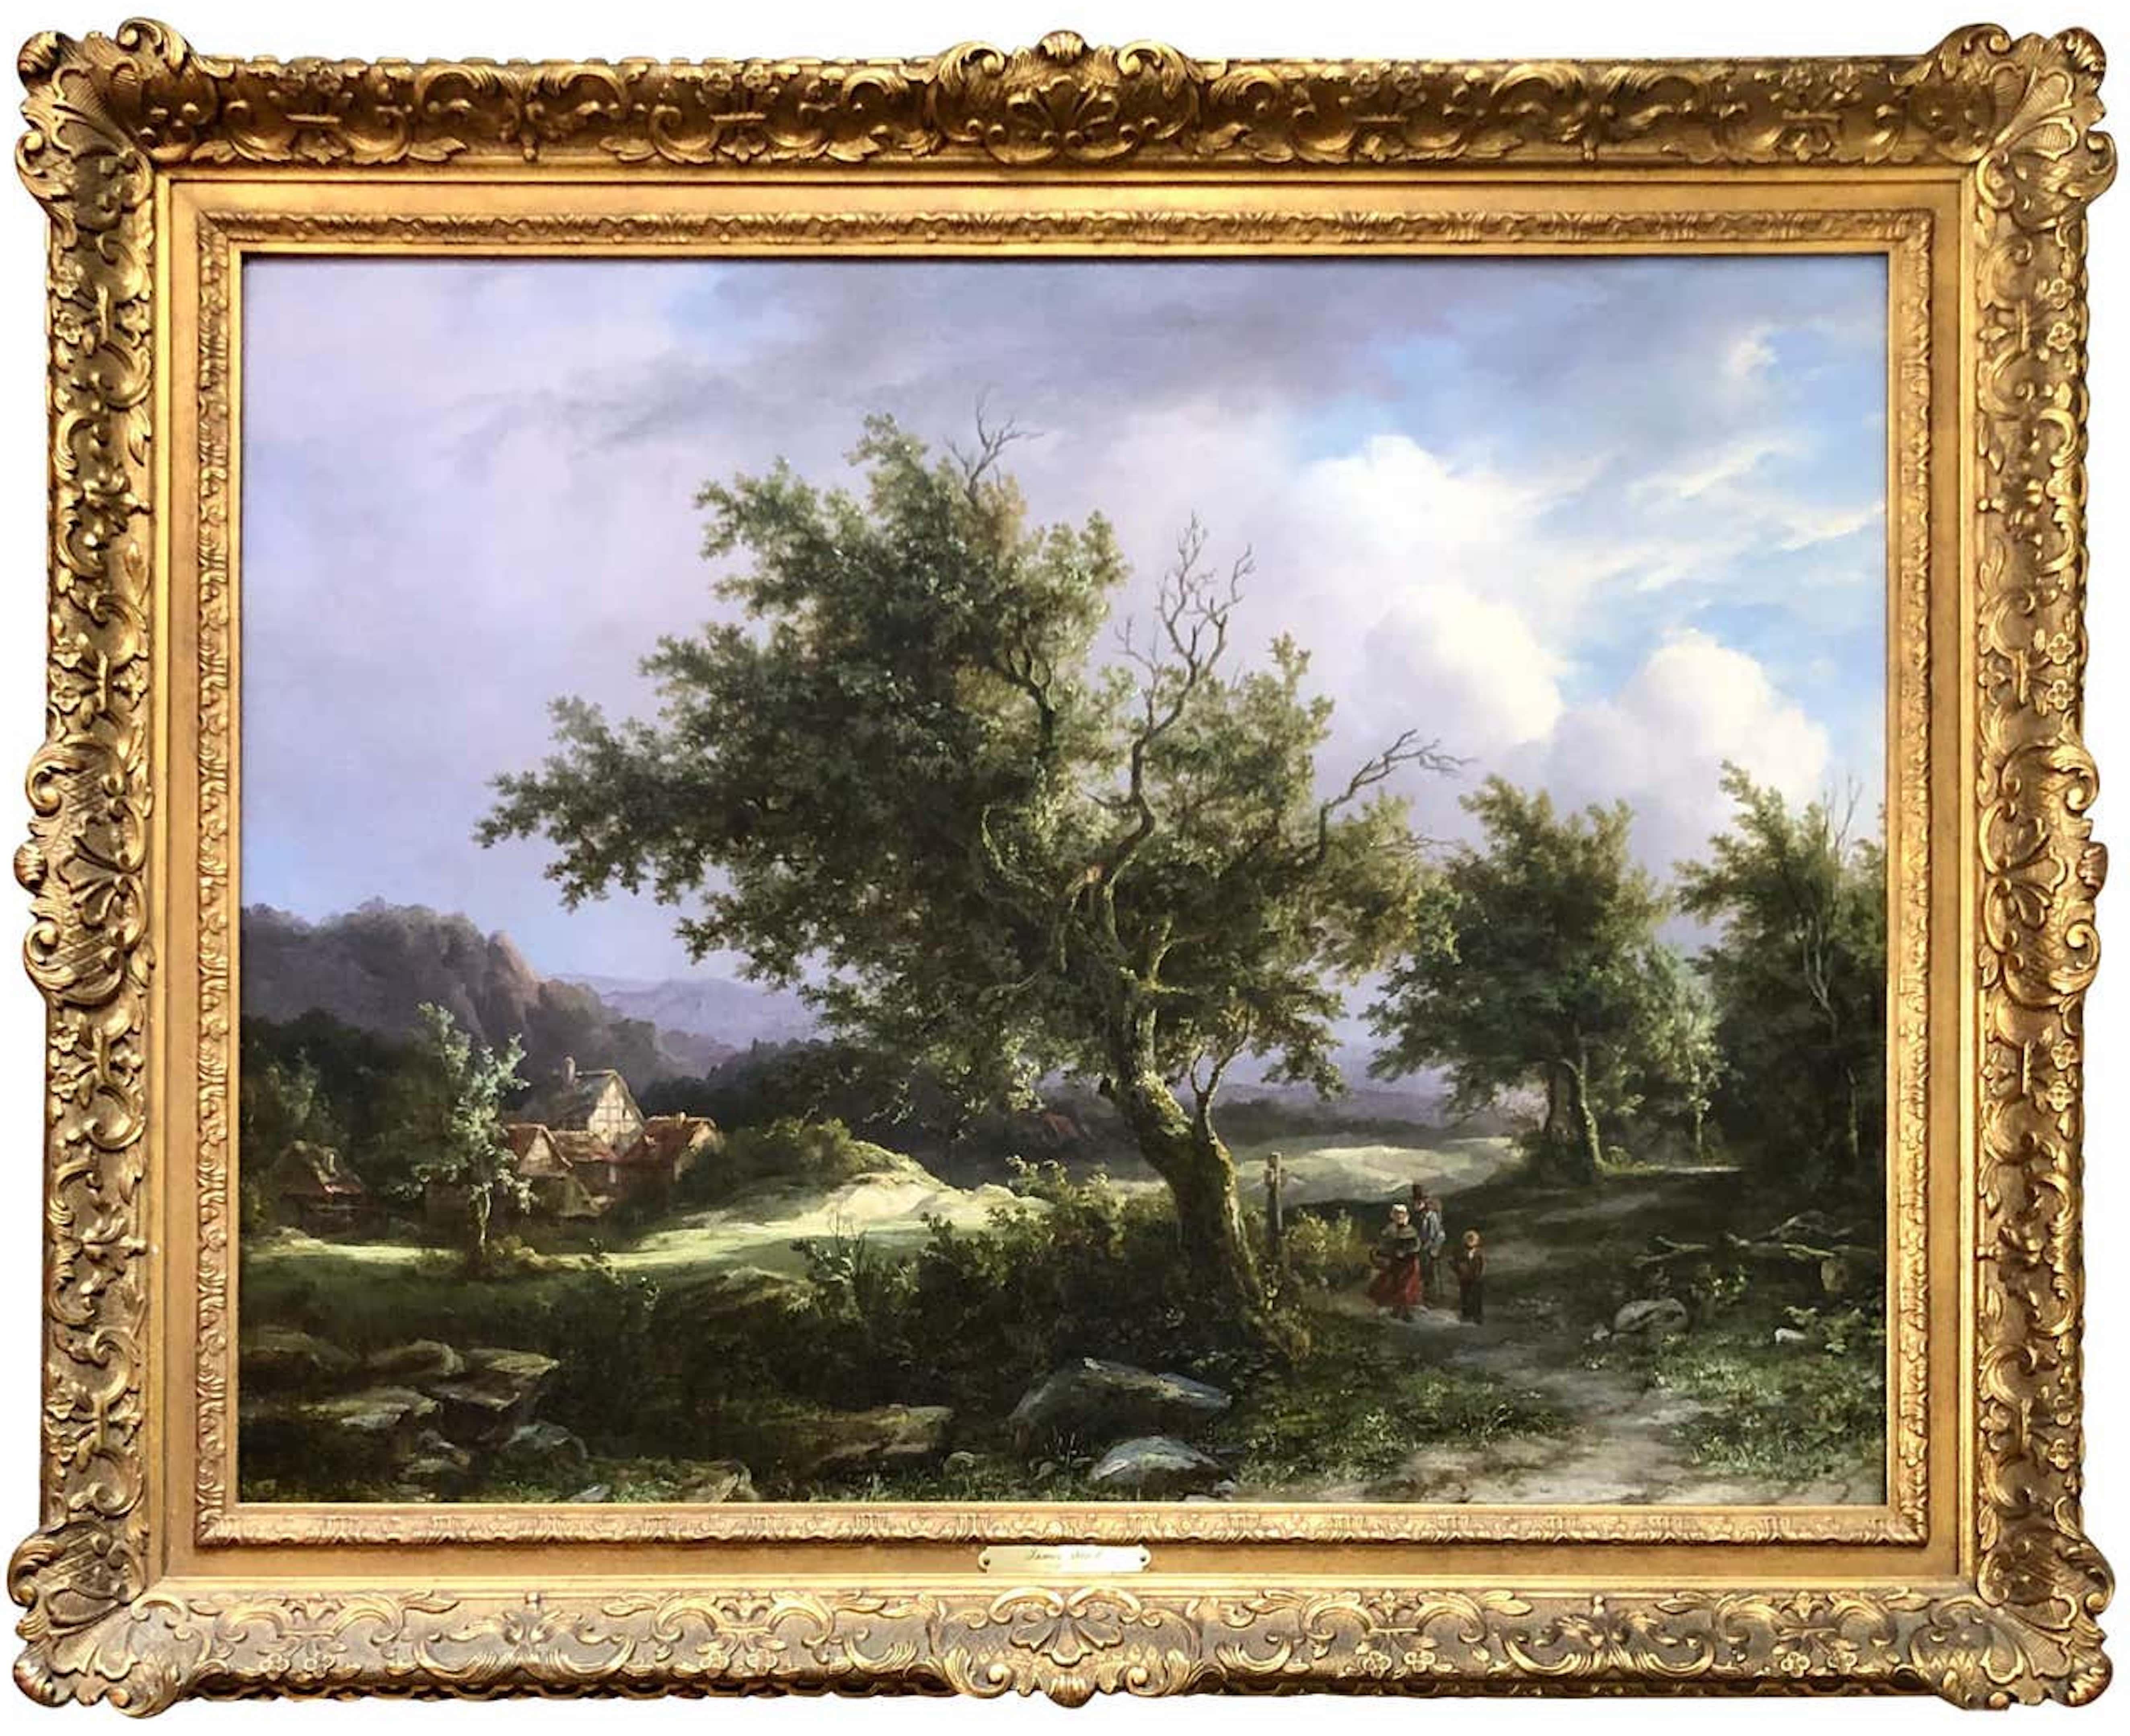 Landscape Painting James Stark - Travelers on a Country Path (voyeurs à la campagne)